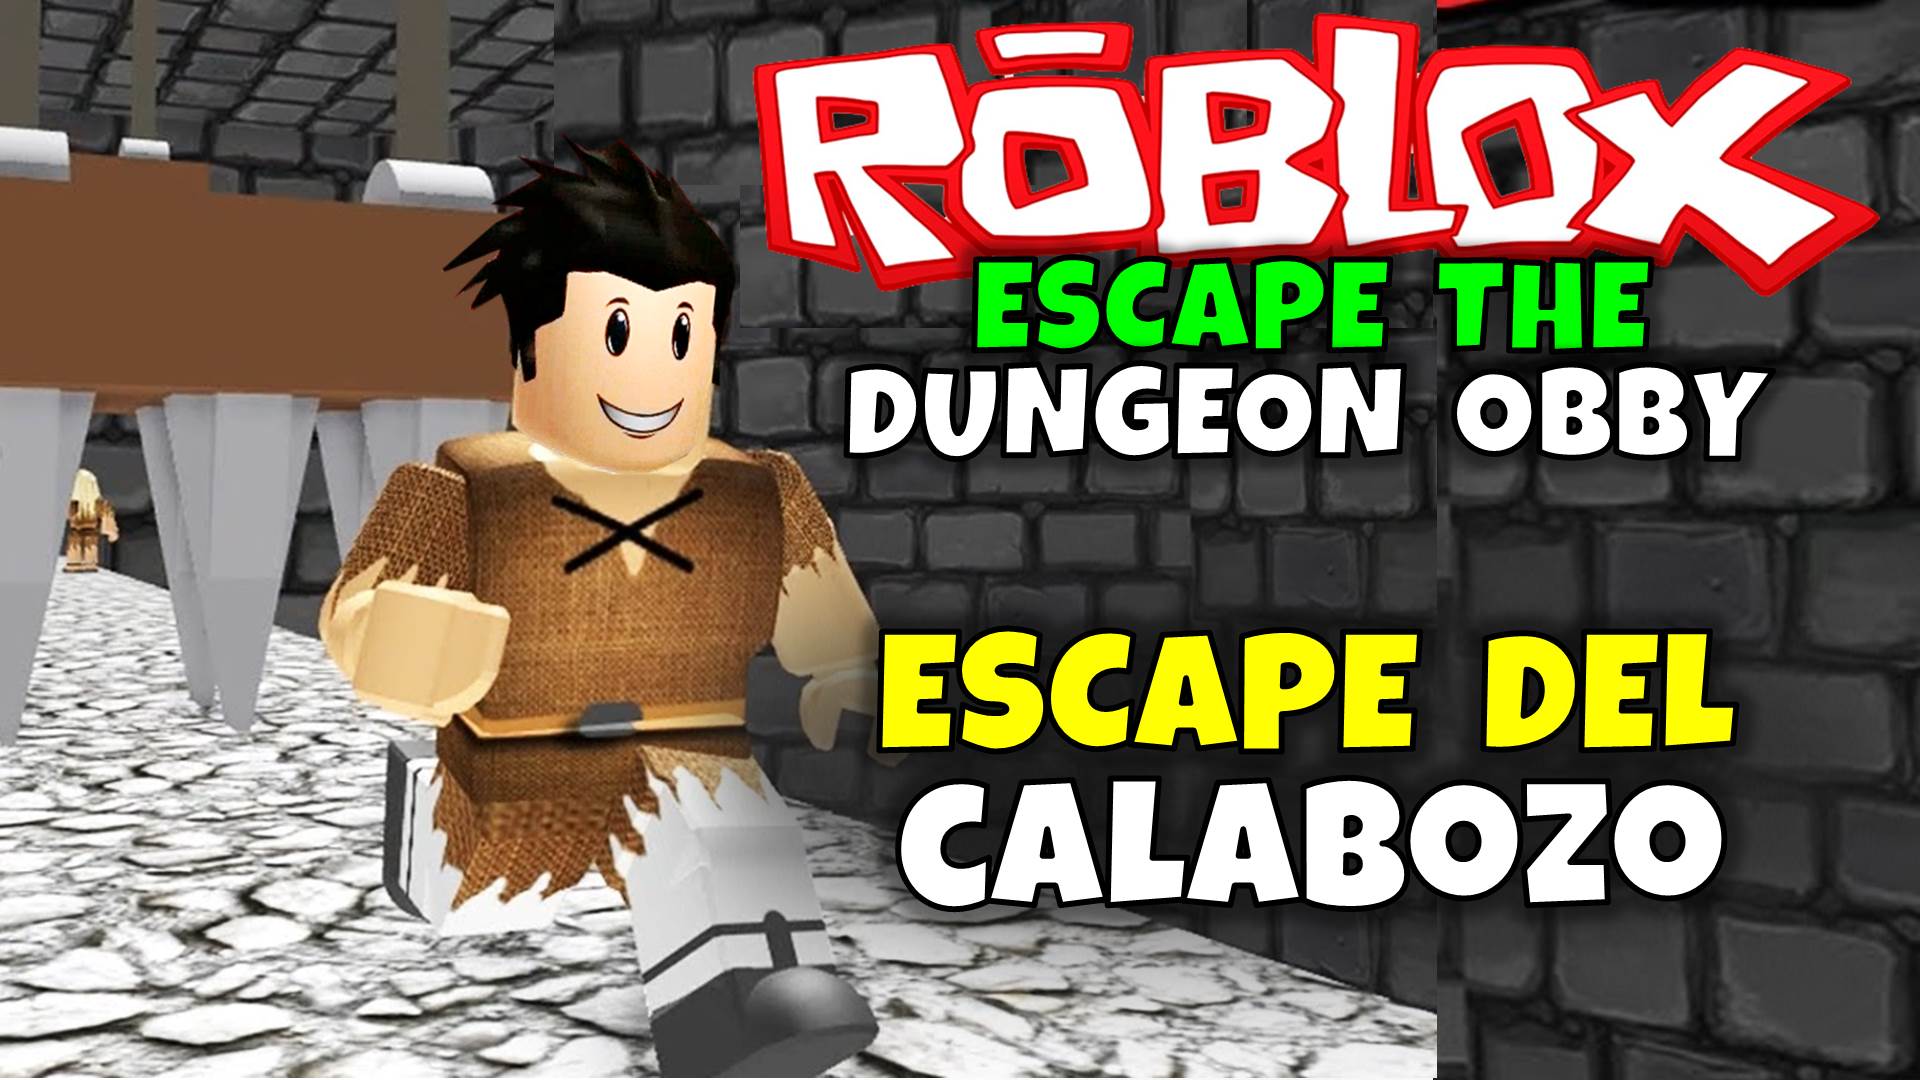 Rey Zerch On Twitter Escape Del Calabozo Roblox Escape The